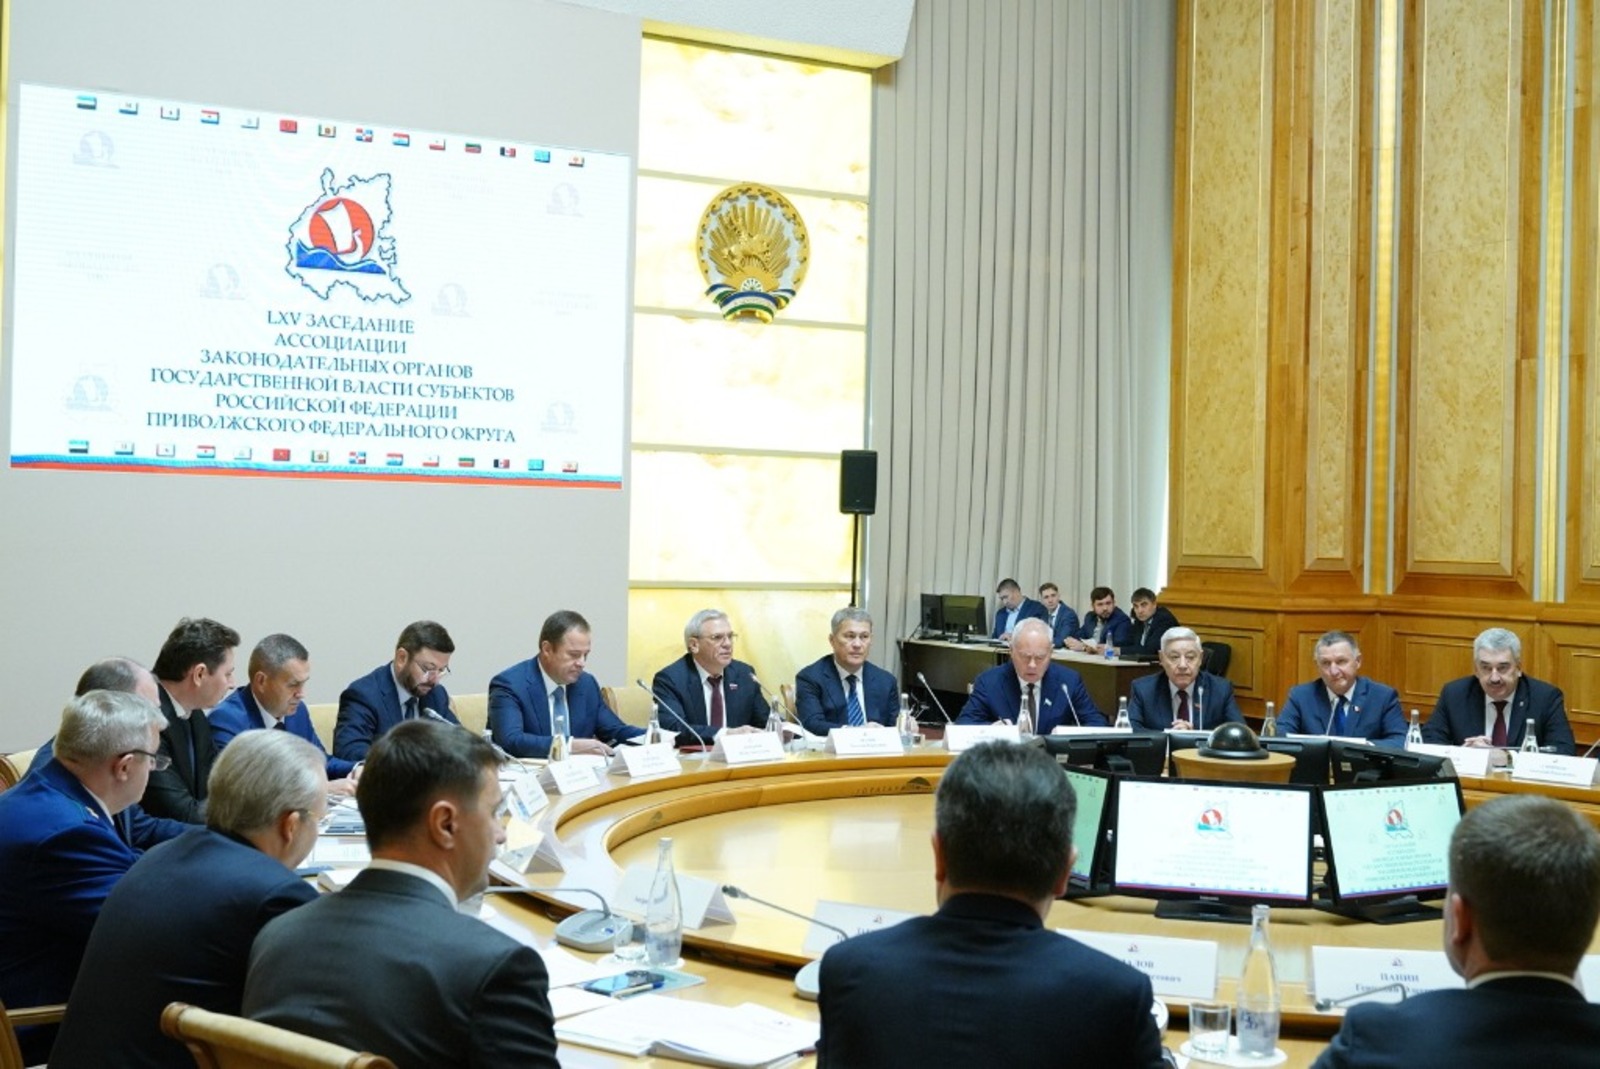 Министр цифрового развития Башкортостана рассказал об опыте цифровизации госуправления в республике